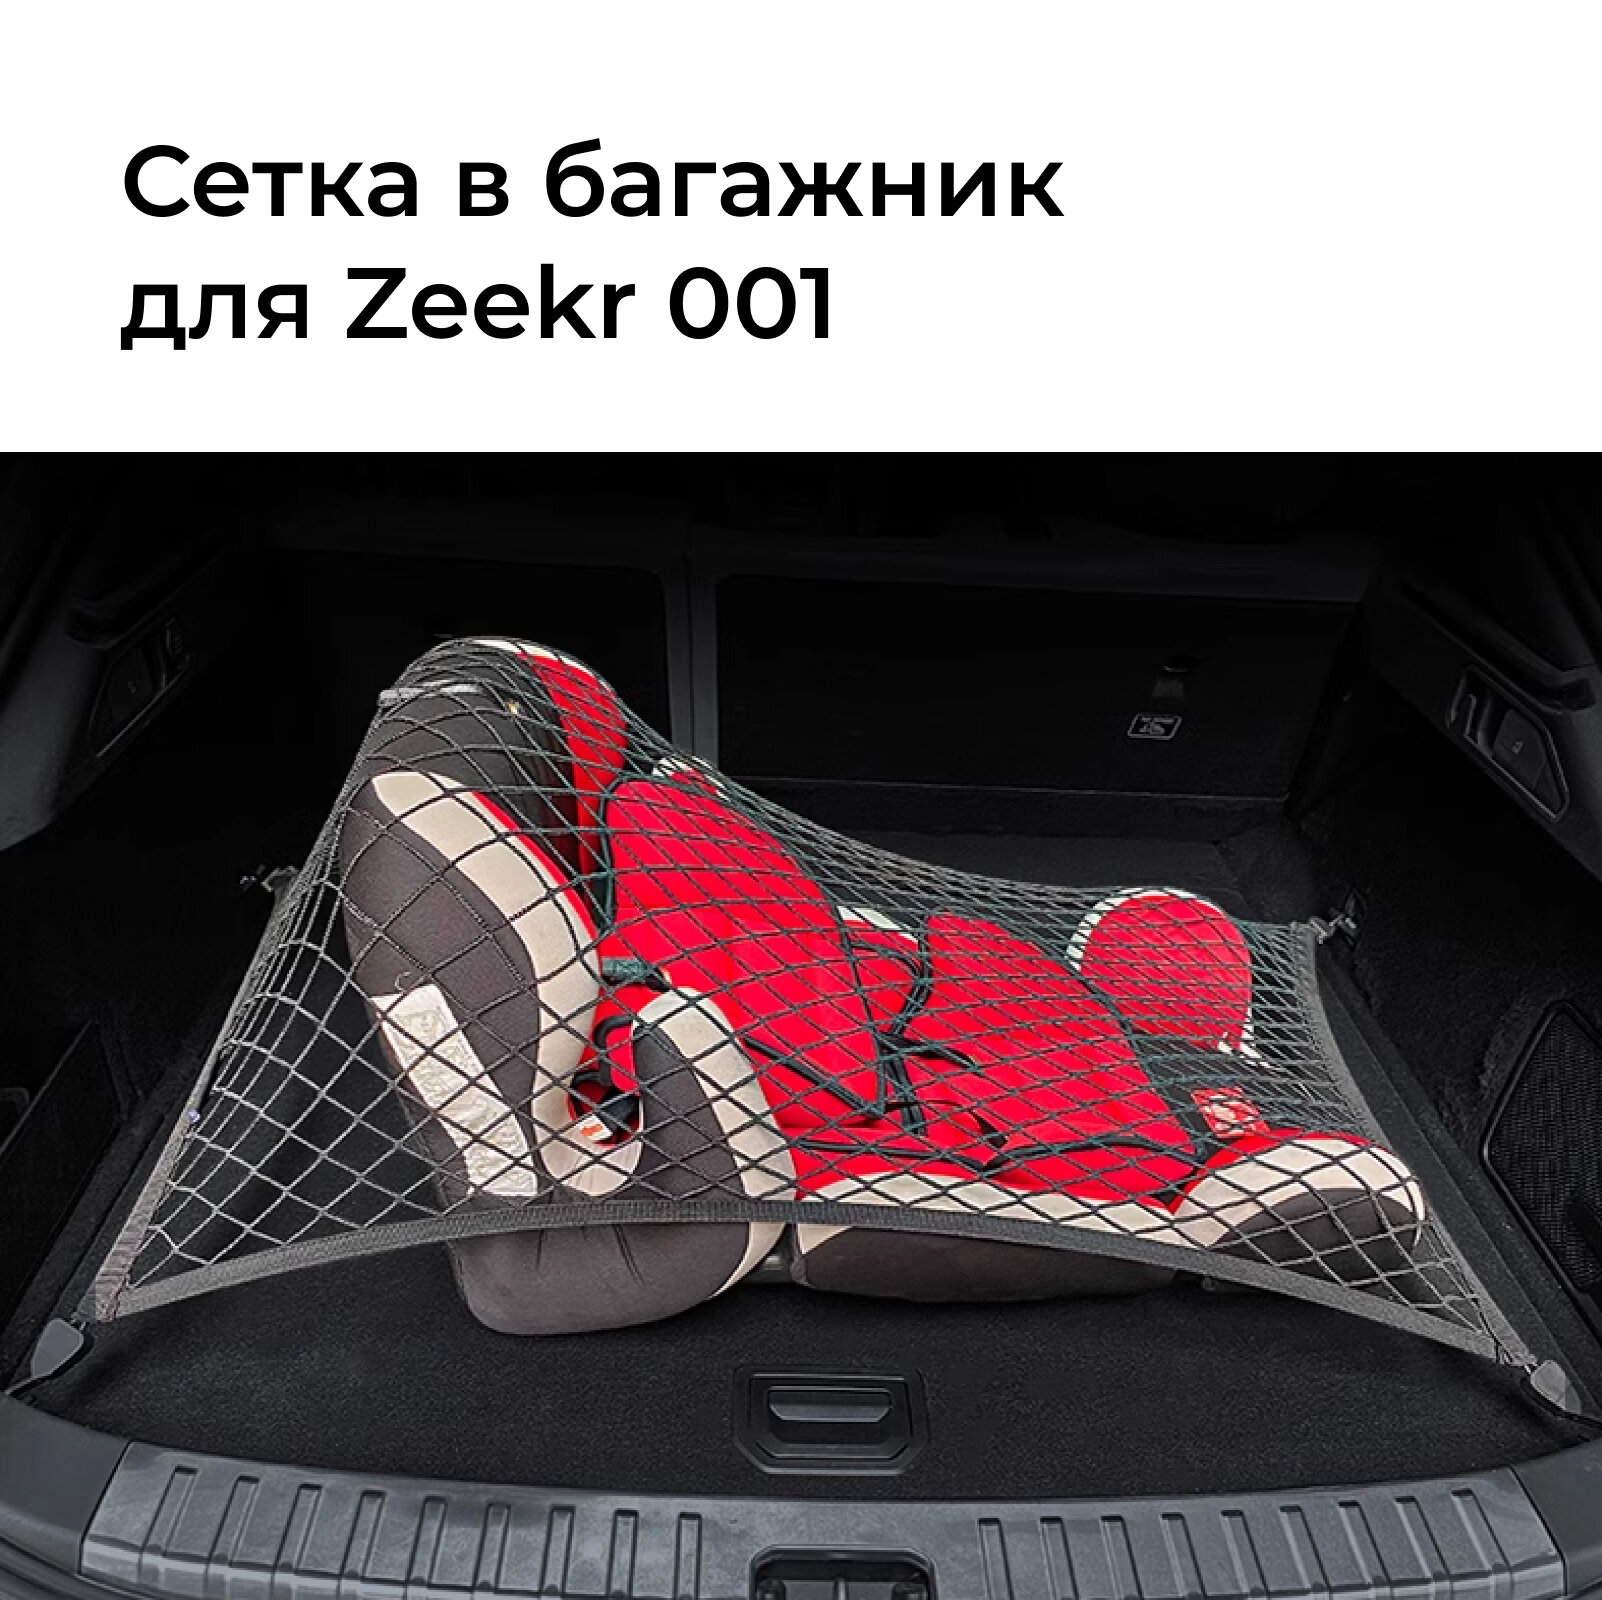 Сетка в багажник автомобиля Zeekr001